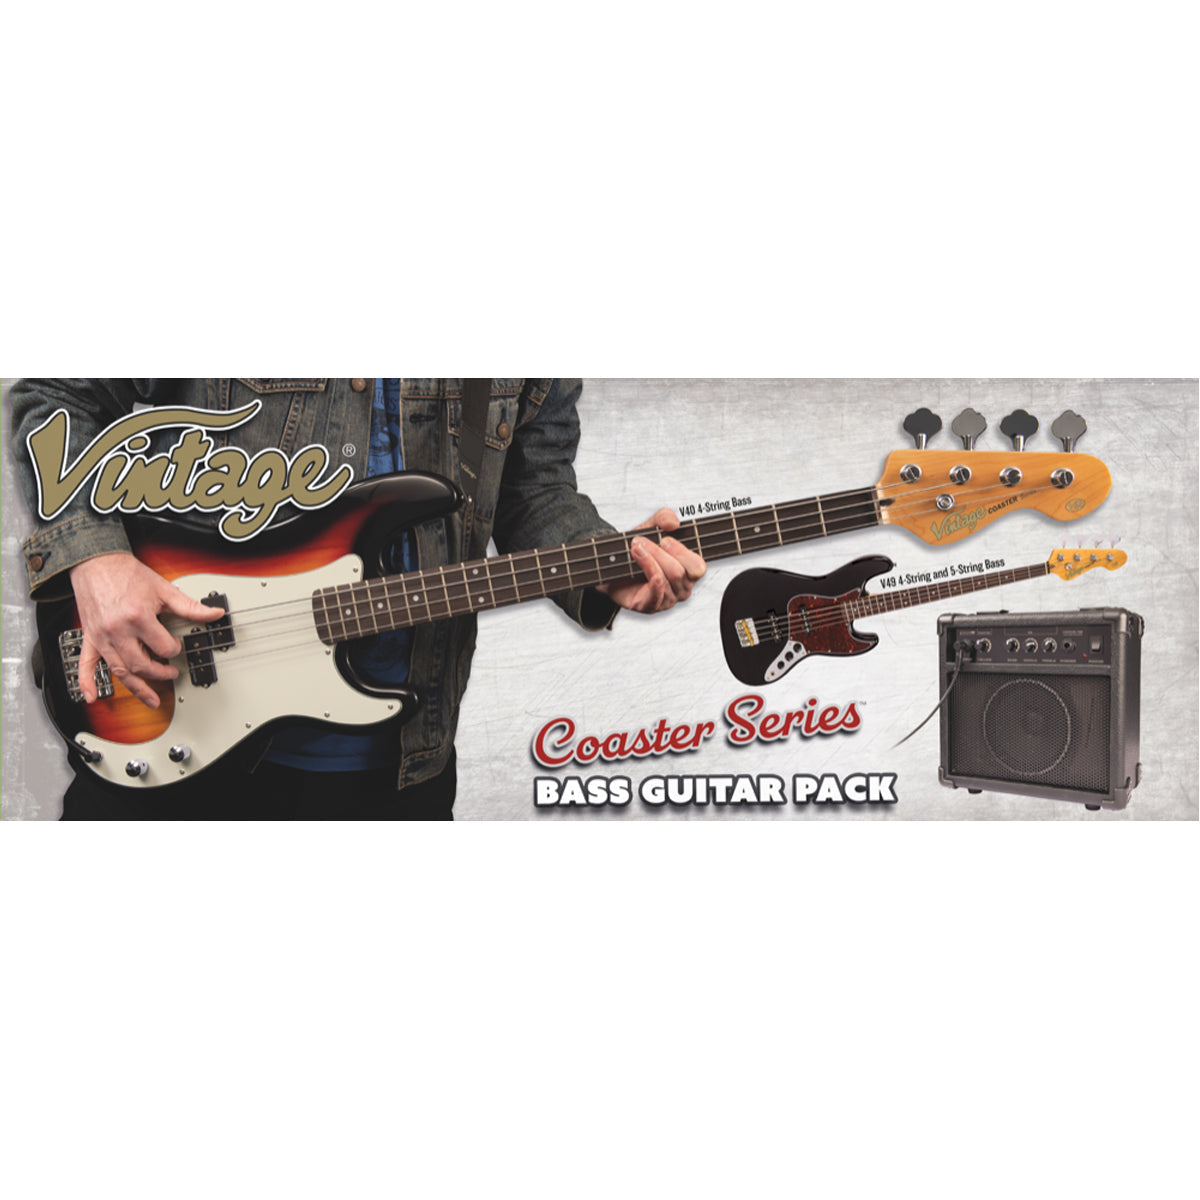 Vintage V40 Coaster Series Bass Guitar Pack ~ Left Hand Boulevard Black, Bass Guitar Packs for sale at Richards Guitars.